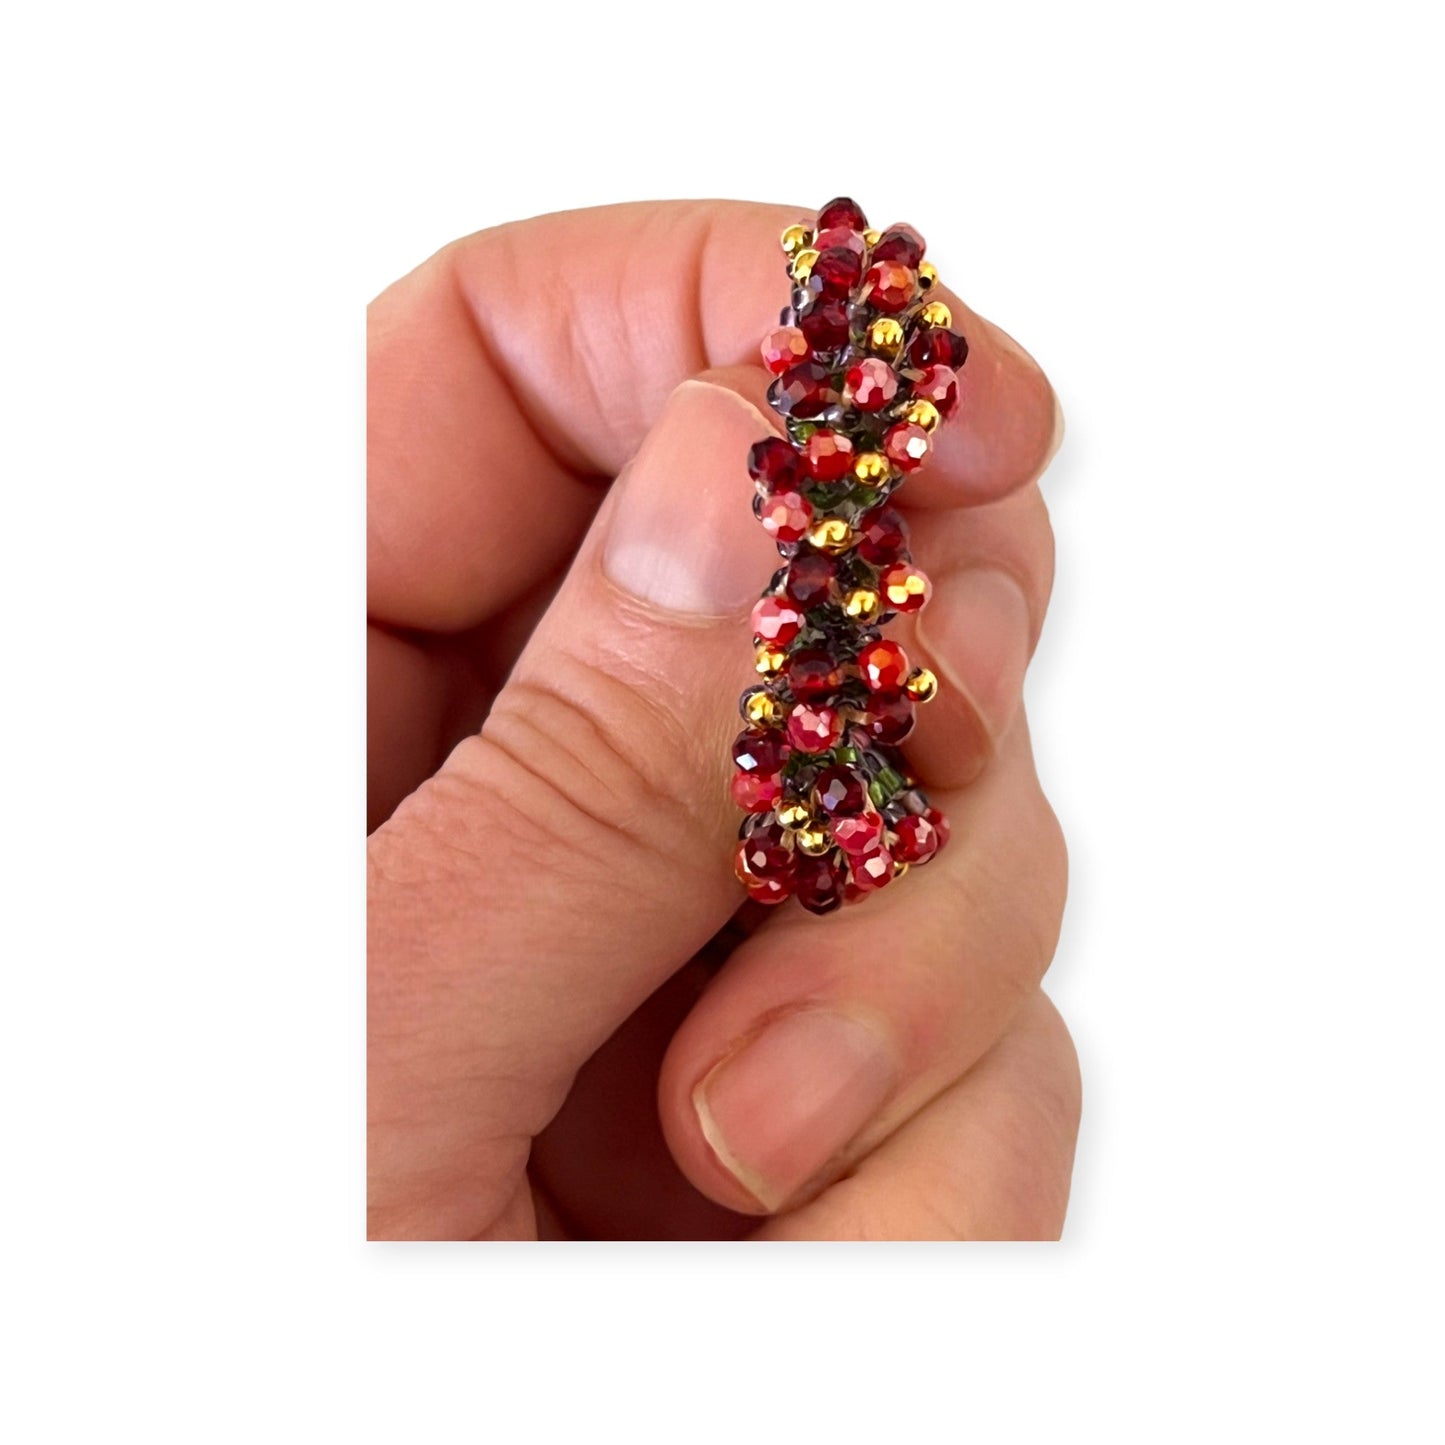 Colorful beaded hoop earrings - Sundara Joon